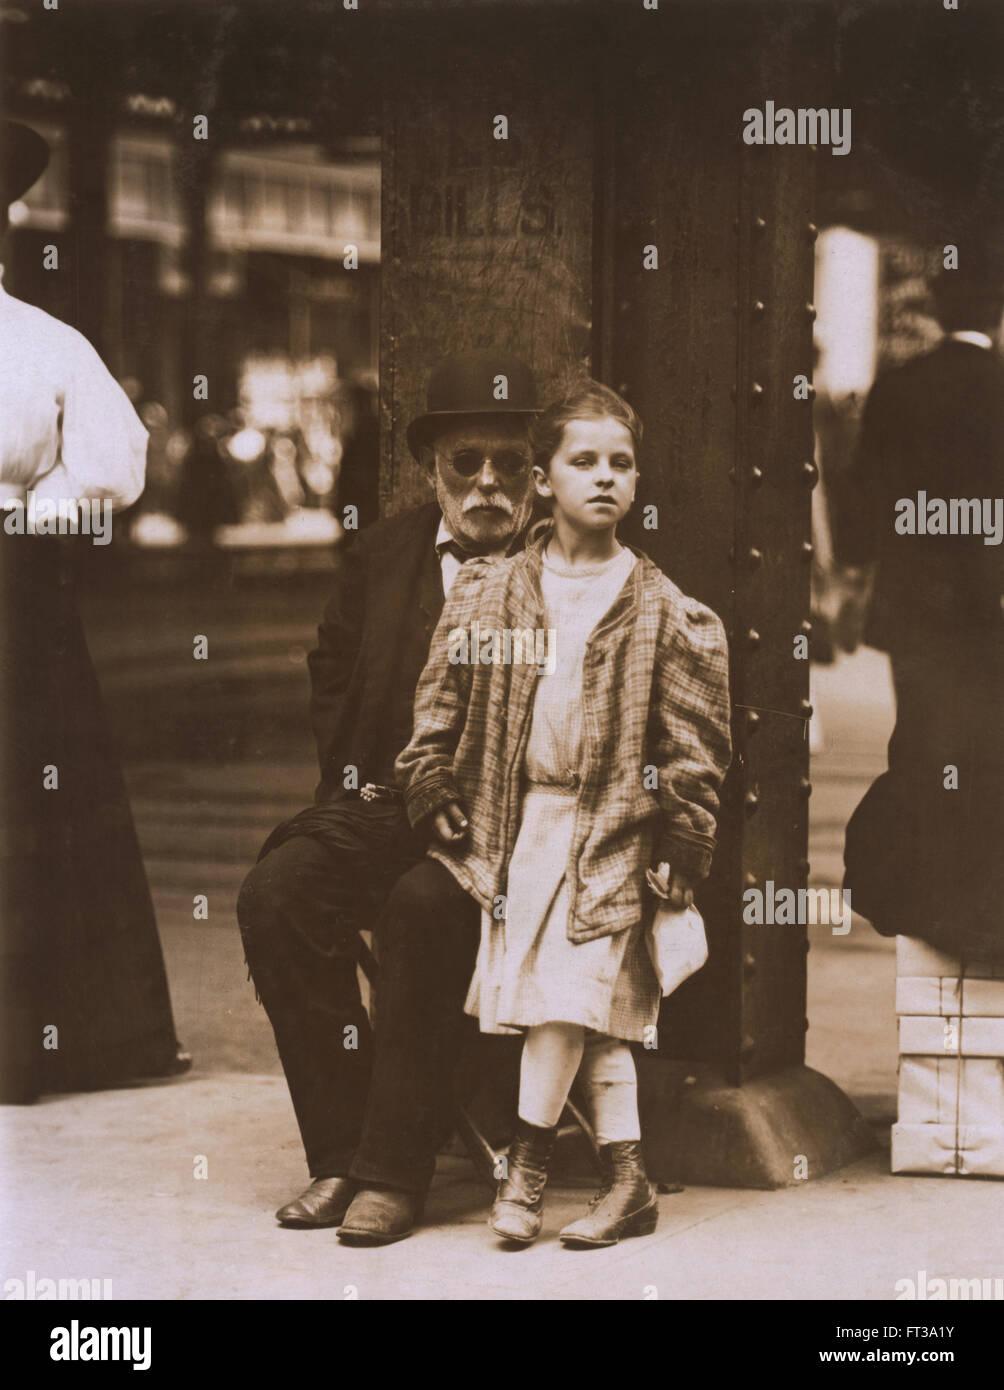 Ragazza giovane e uomo anziano accattonaggio 6th Avenue e la 14th Street, New York New York, USA, circa 1910 Foto Stock